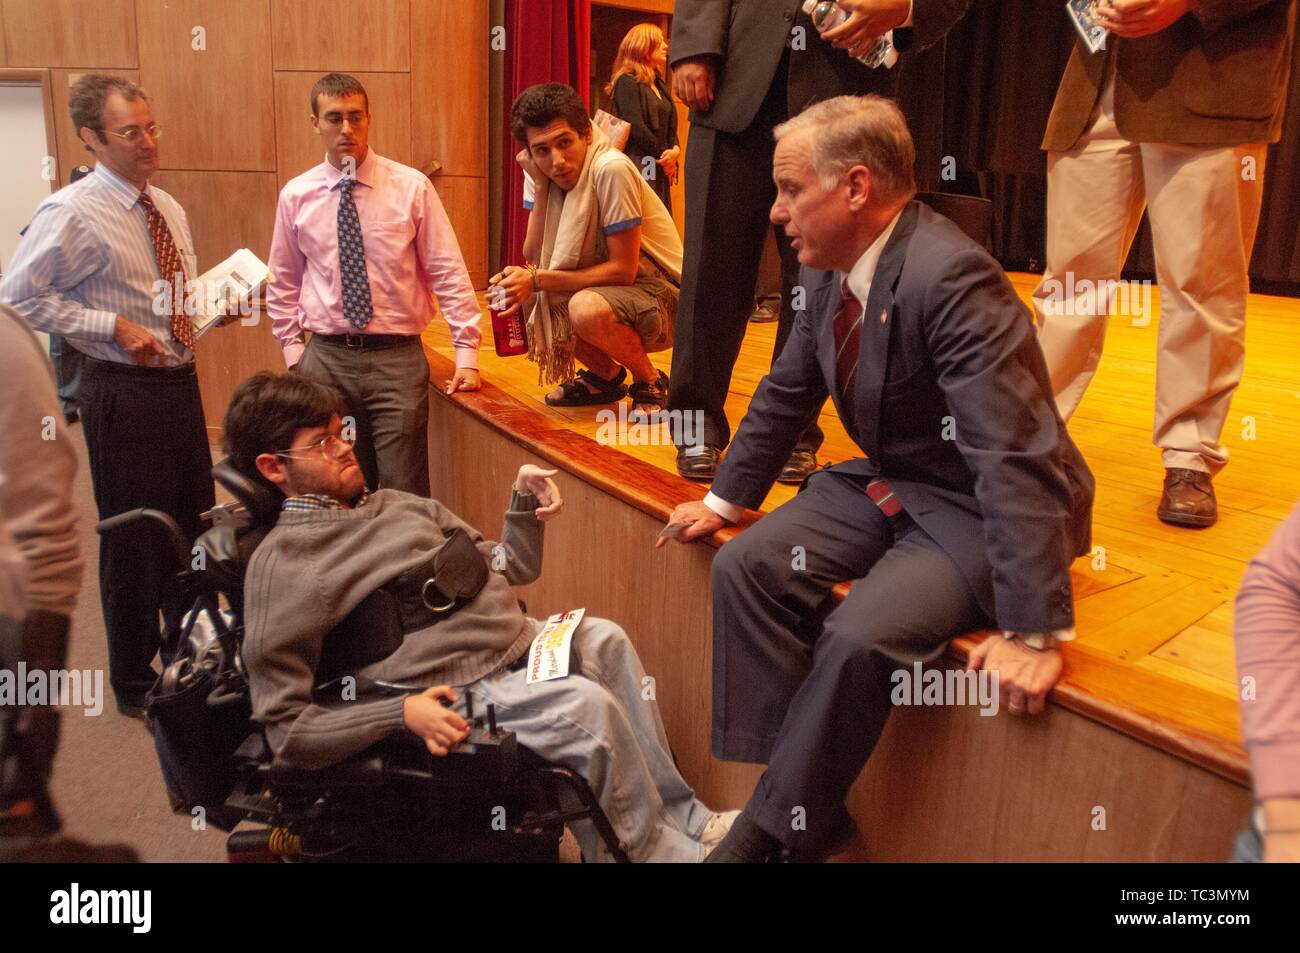 Amerikanische Politiker Howard Dean sitzt lässig beim Sprechen mit einer Person in einem Rollstuhl an der Johns Hopkins Universität, Baltimore, Maryland, 11. Oktober 2007. Vom Homewood Sammlung Fotografie. () Stockfoto